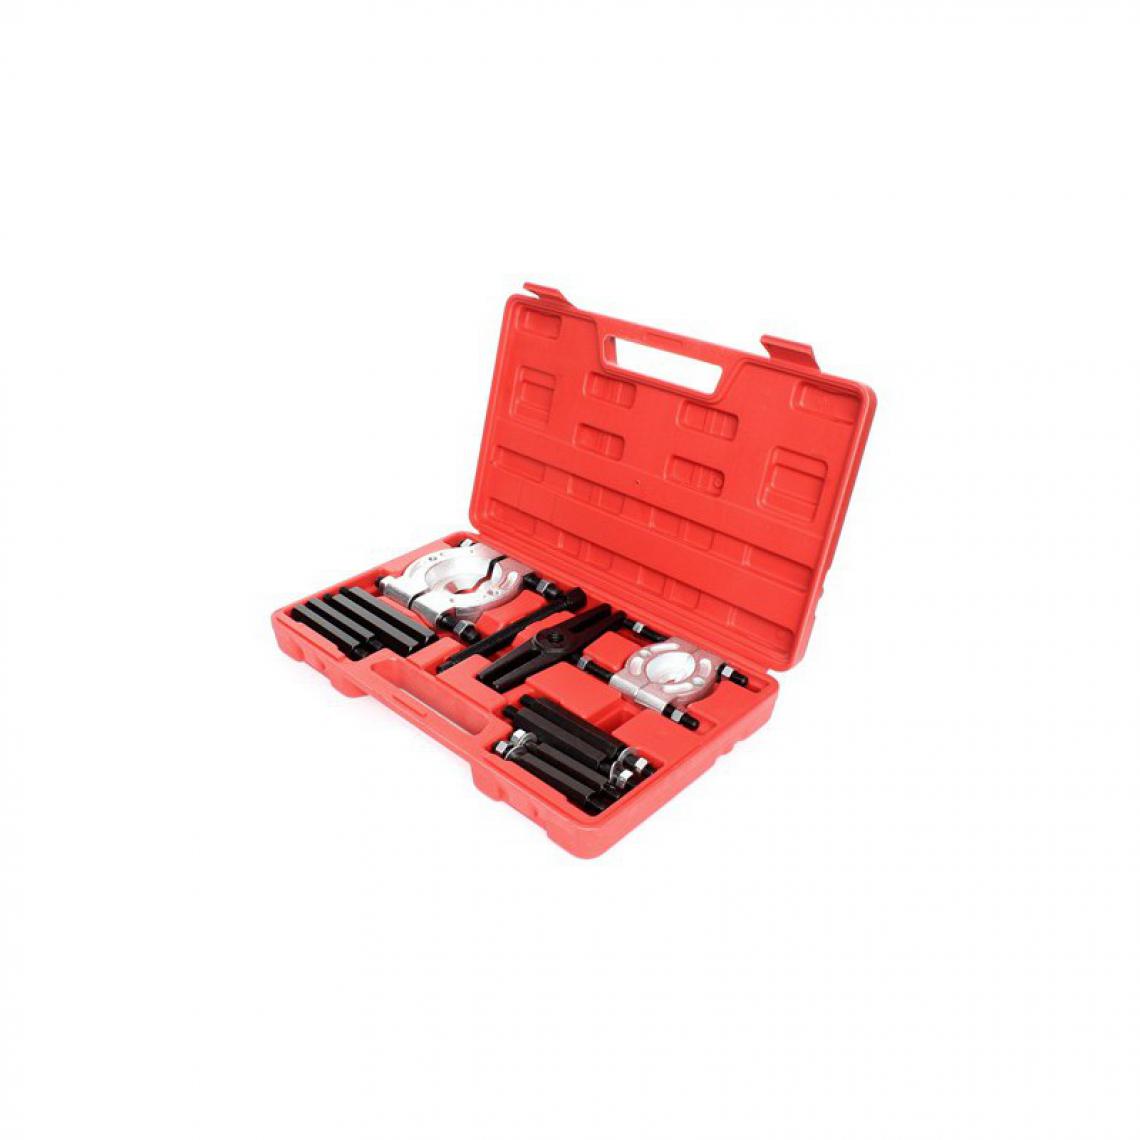 Hucoco - DCRAFT - Kit d'extracteurs de roulement - Kit avec mallette - Outil mécanique spécialisé - Rouge - Boulonneuse